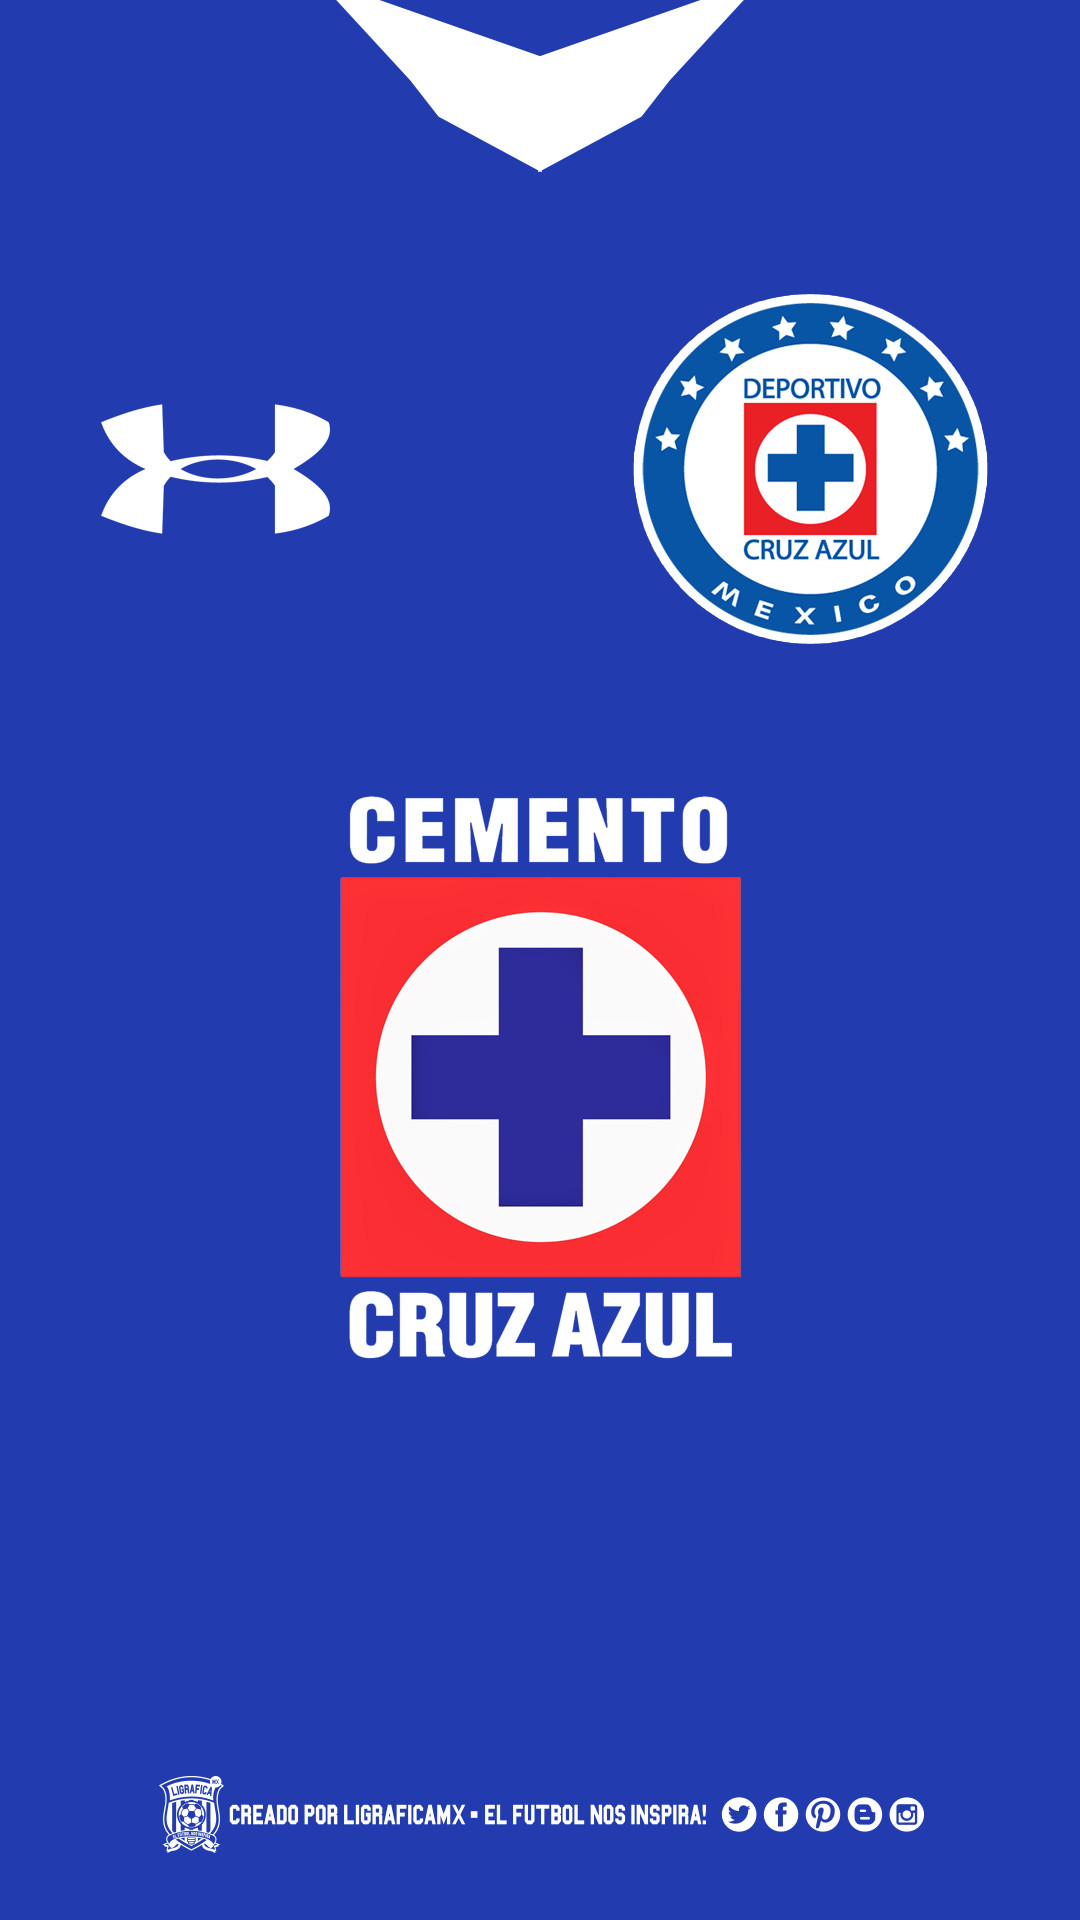 USA Soccer Logo 2018 Wallpaper 72 Images